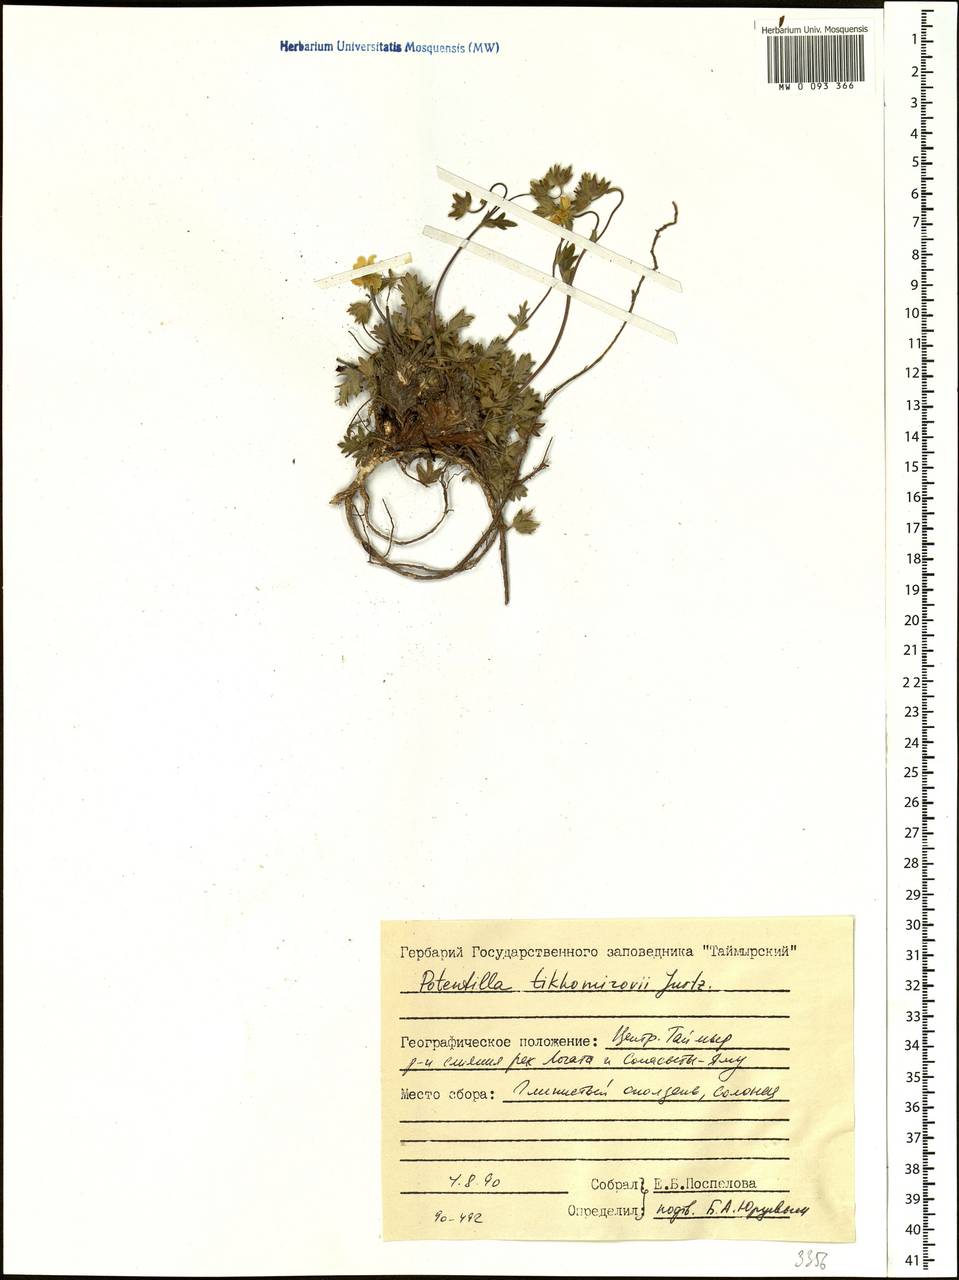 Potentilla ×tikhomirovii Jurtzev, Siberia, Central Siberia (S3) (Russia)